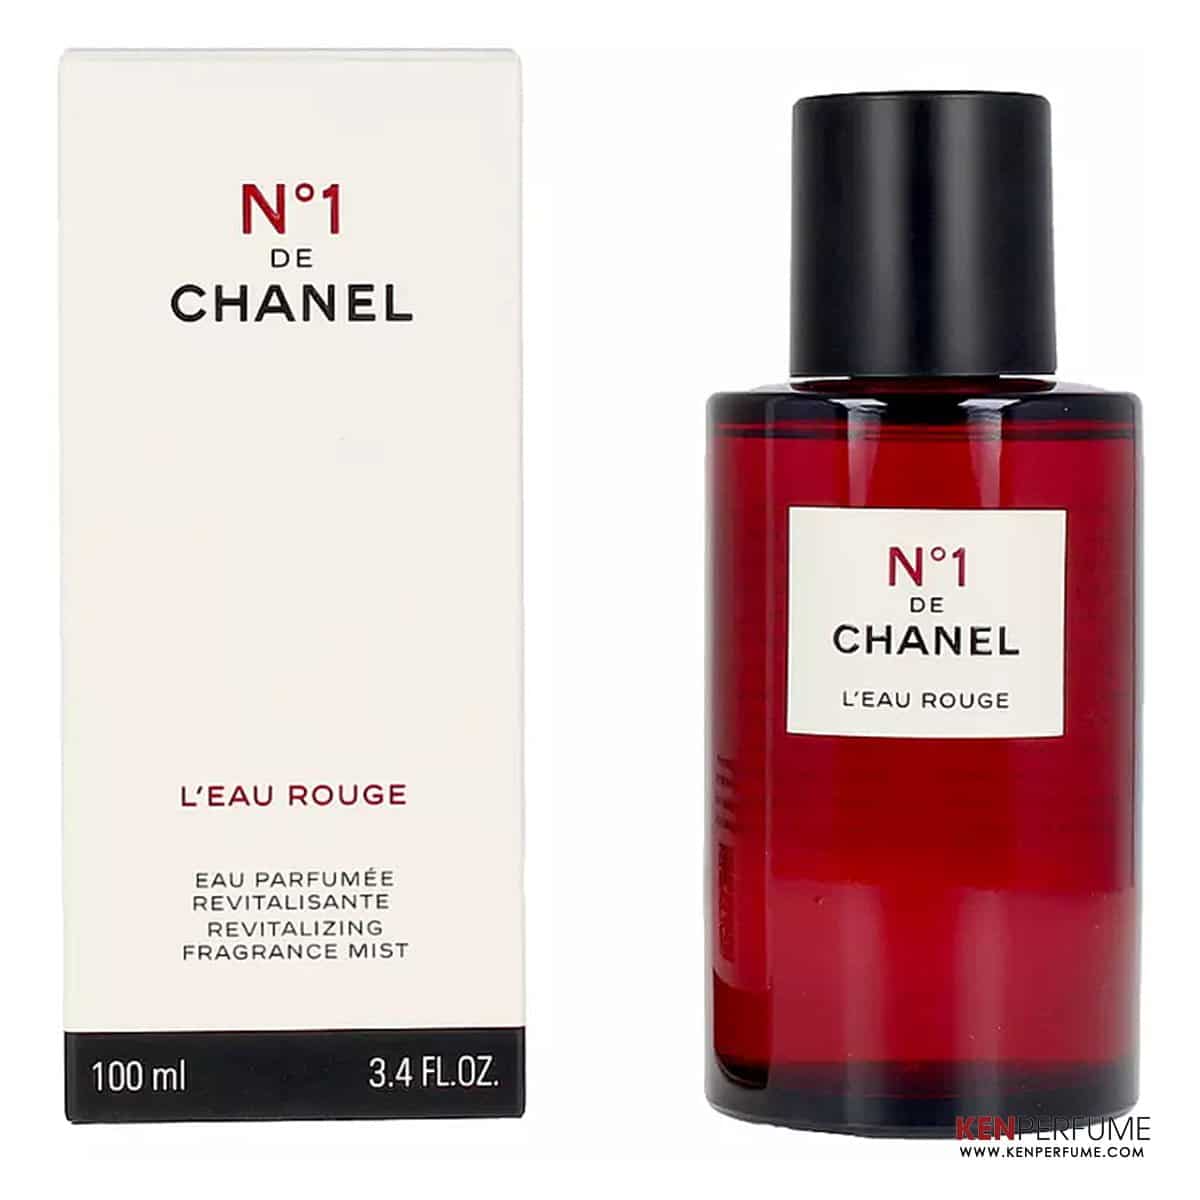 Xịn Shop  Mỹ Phẩm Nước Hoa authentic  Hàng siêu hiếm Chanel no5 đỏ Edp  và Chanel no5 đỏ Leau Chai nước hoa xứng đáng là một trong những loại nước